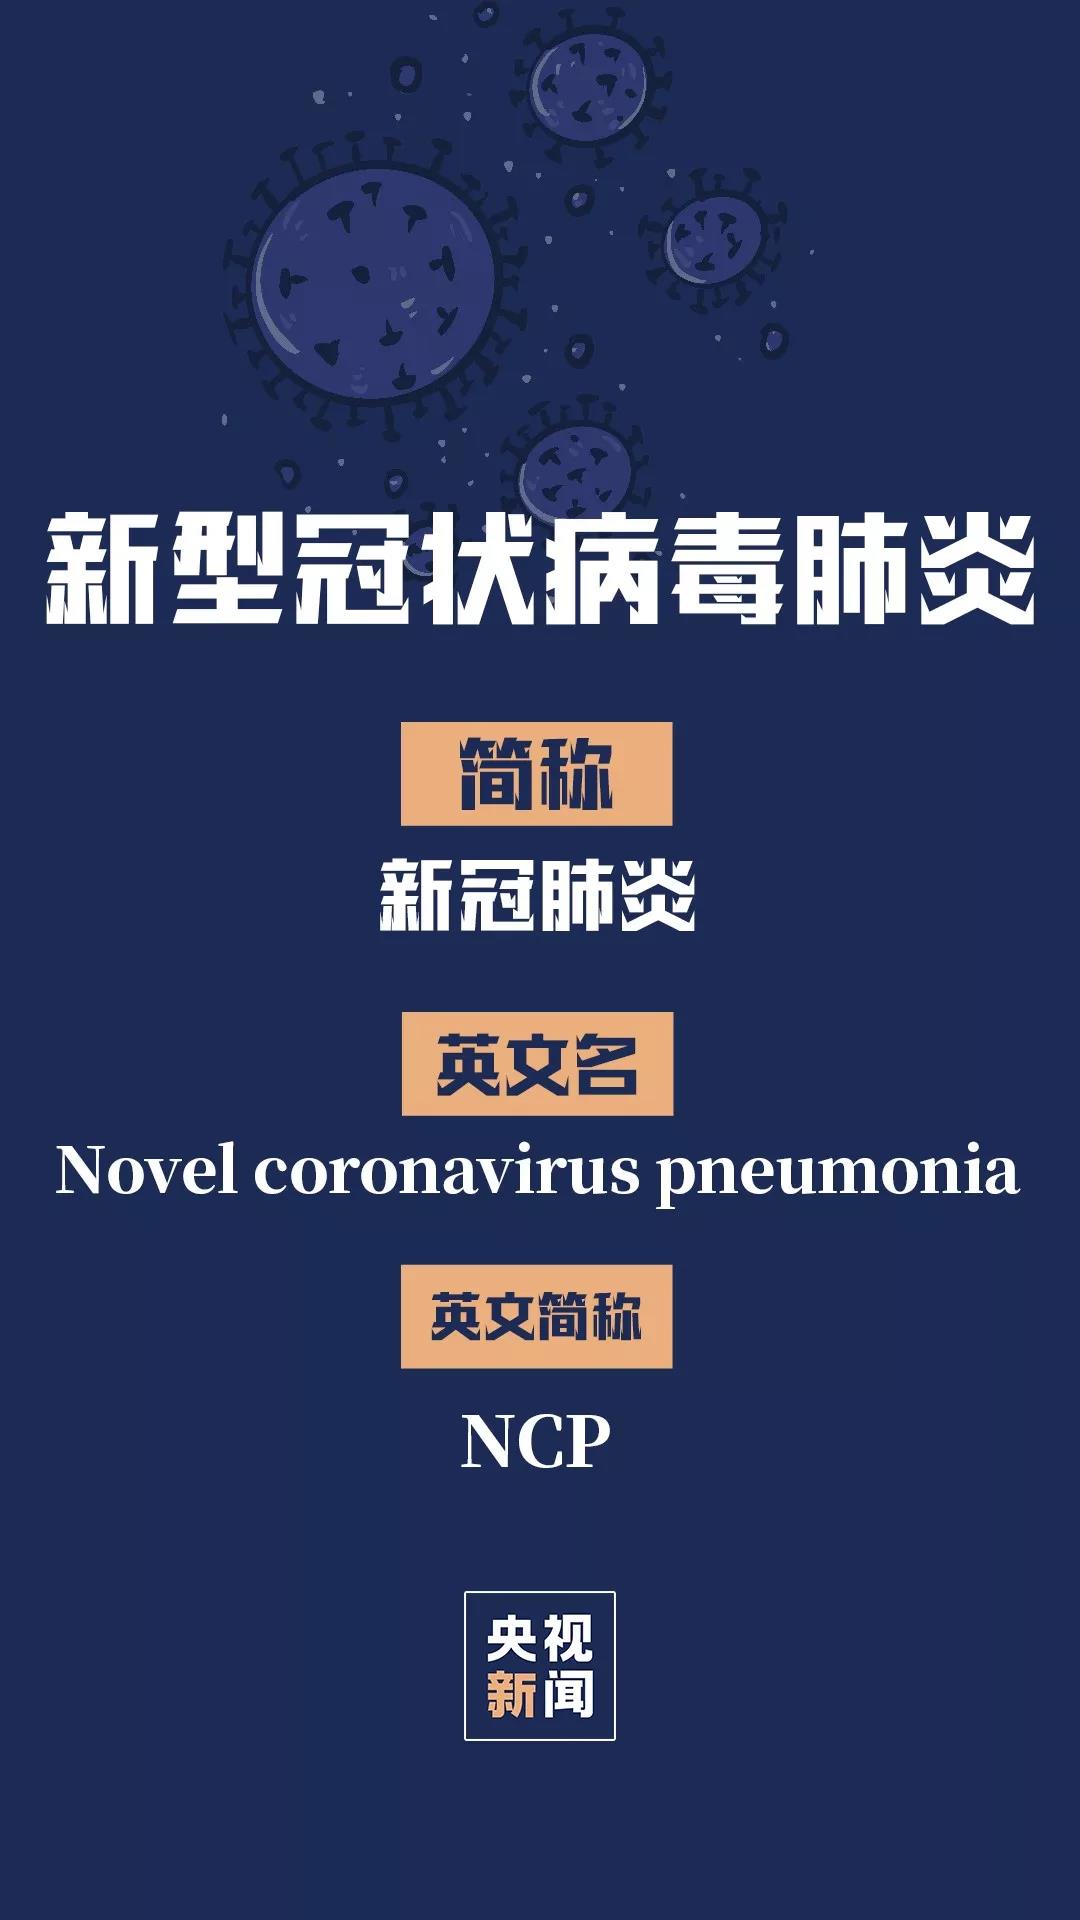 刚刚此次疫情感染肺炎中文名定为新冠肺炎简称ncp